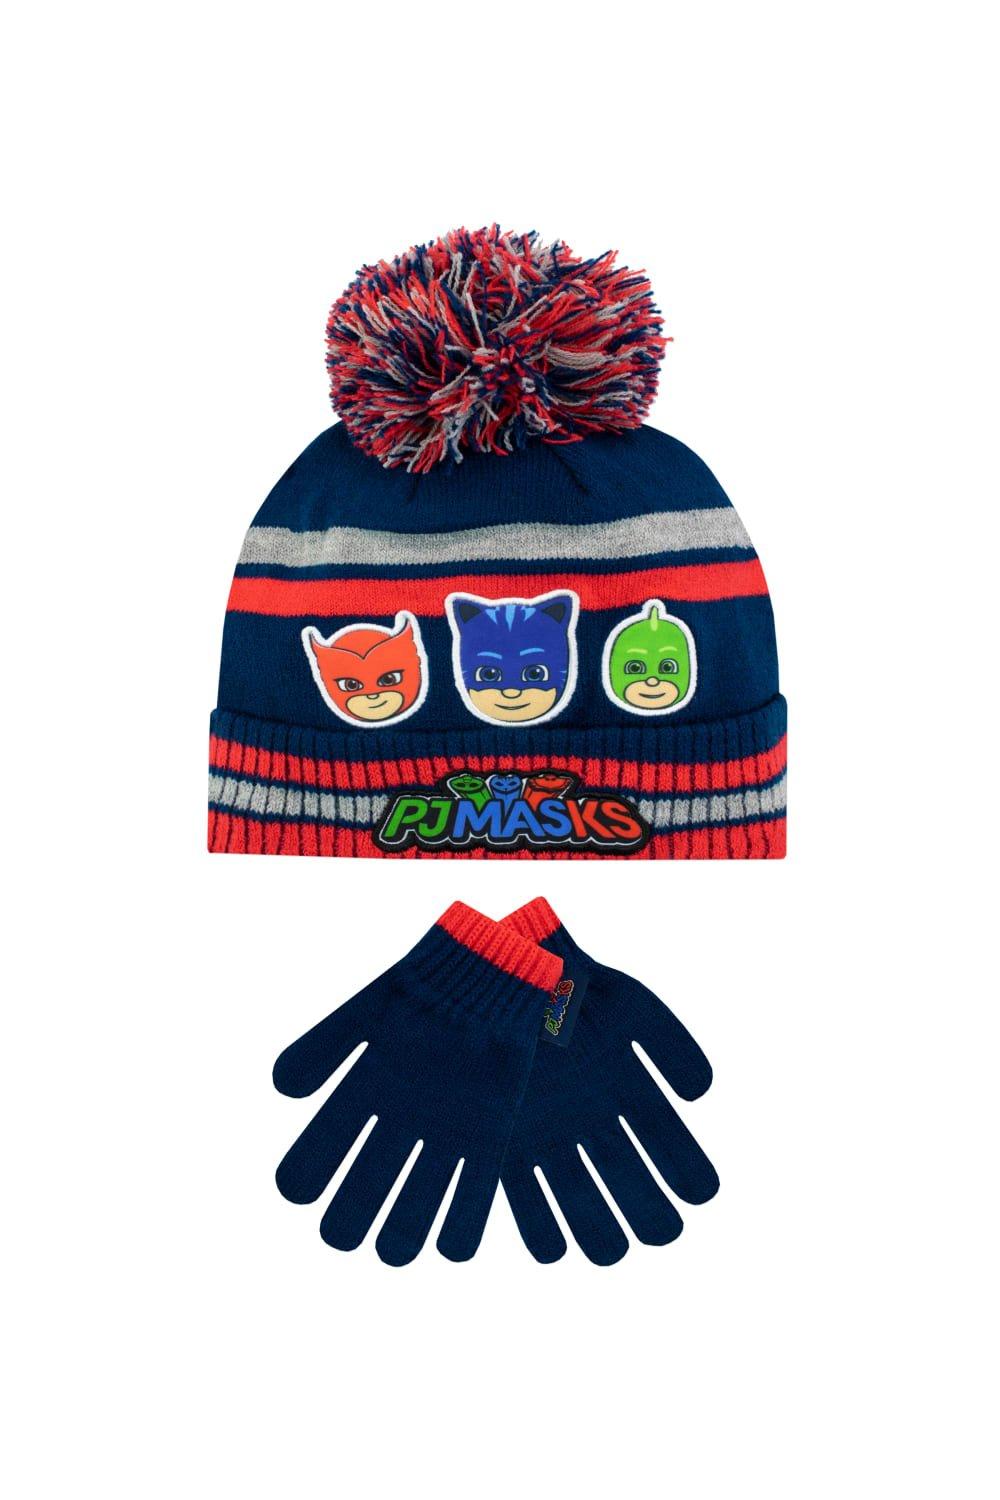 шапка modniki для мальчиков и девочек р56 темно синяя Детский комплект шапки и перчаток PJ Masks, синий